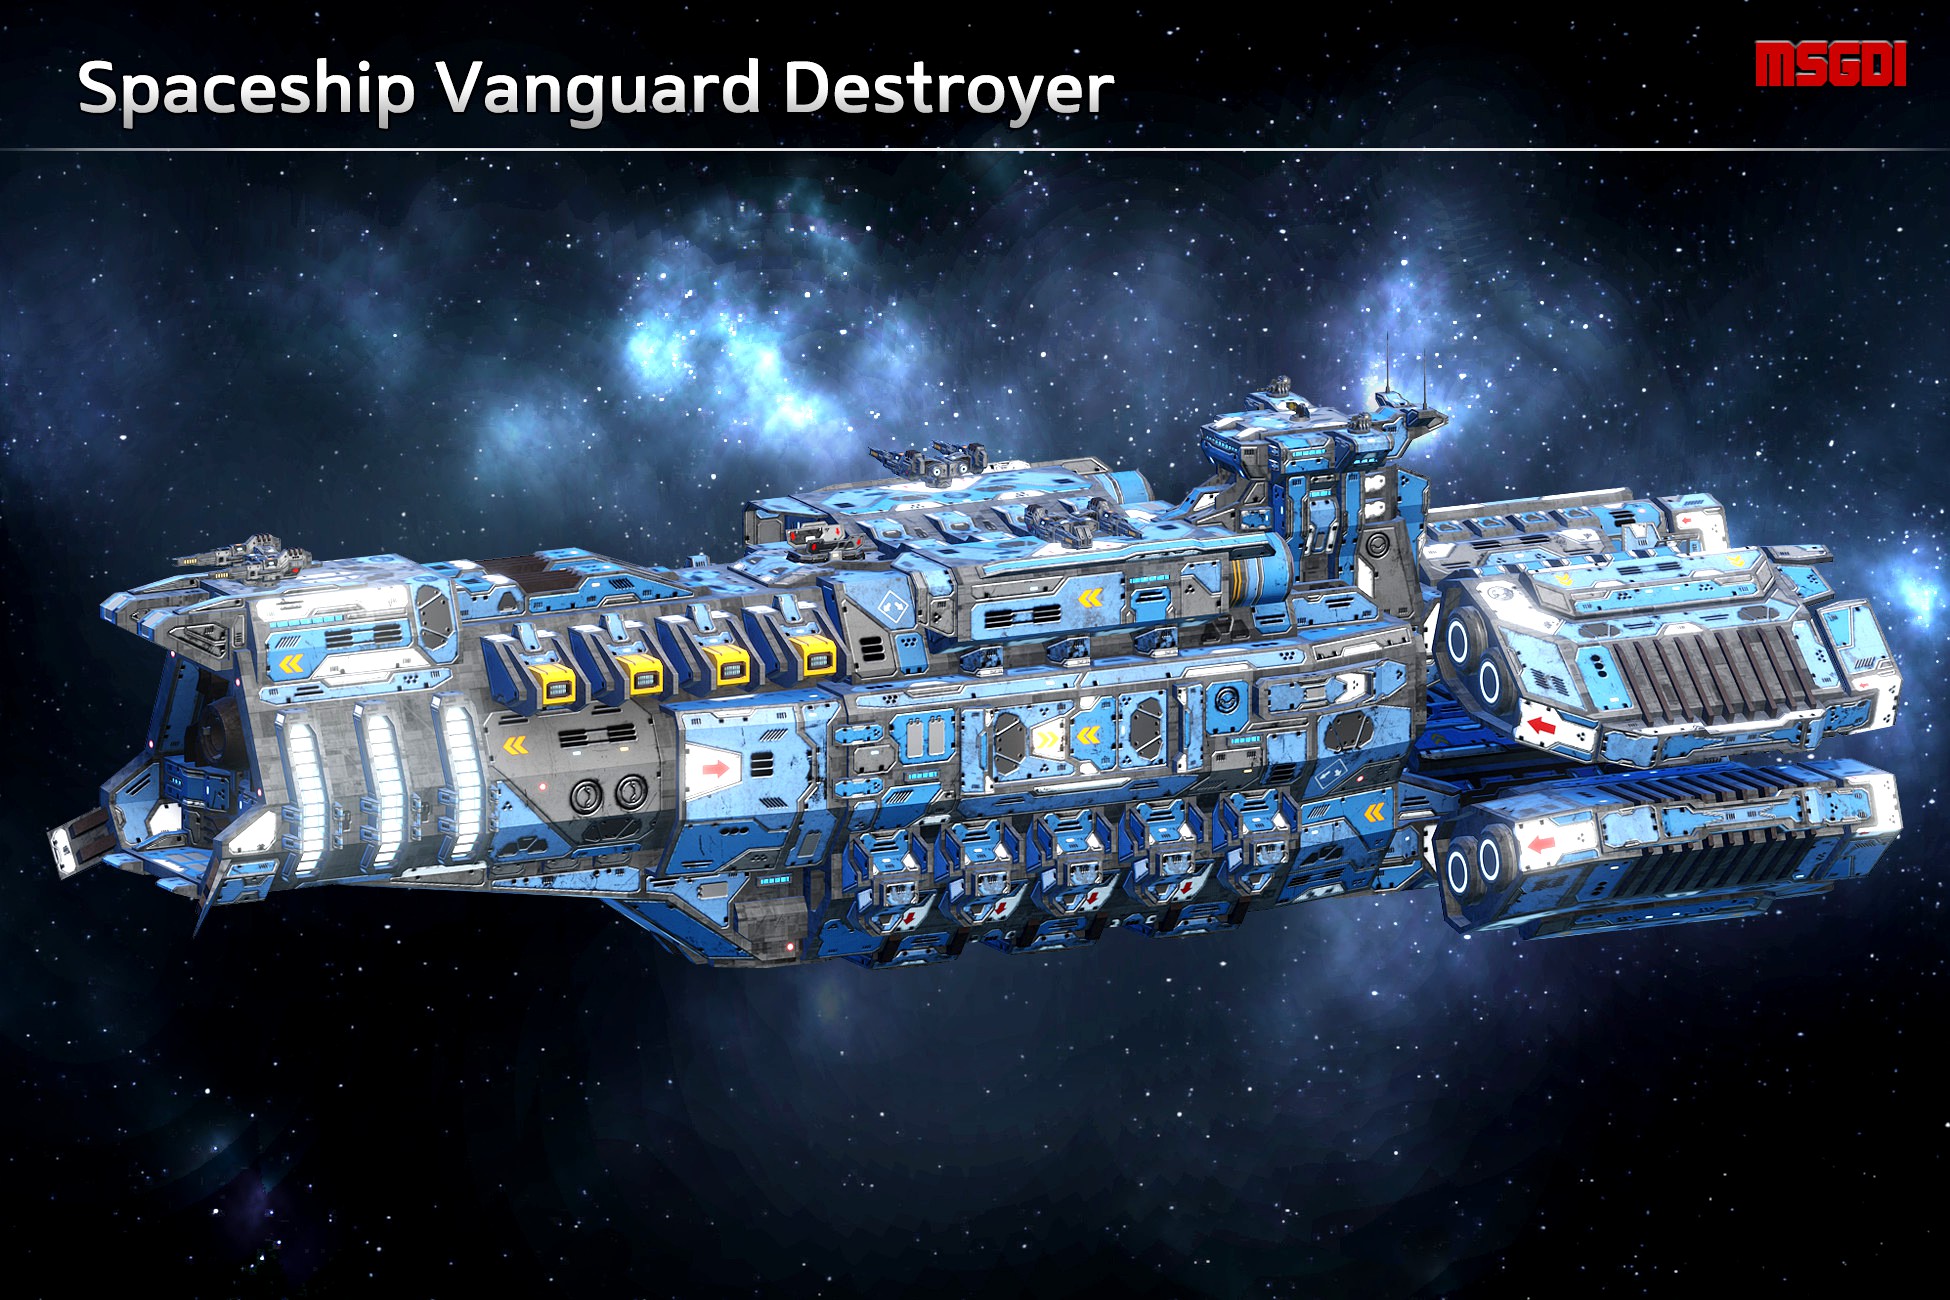 Spaceship Vanguard Destroyer